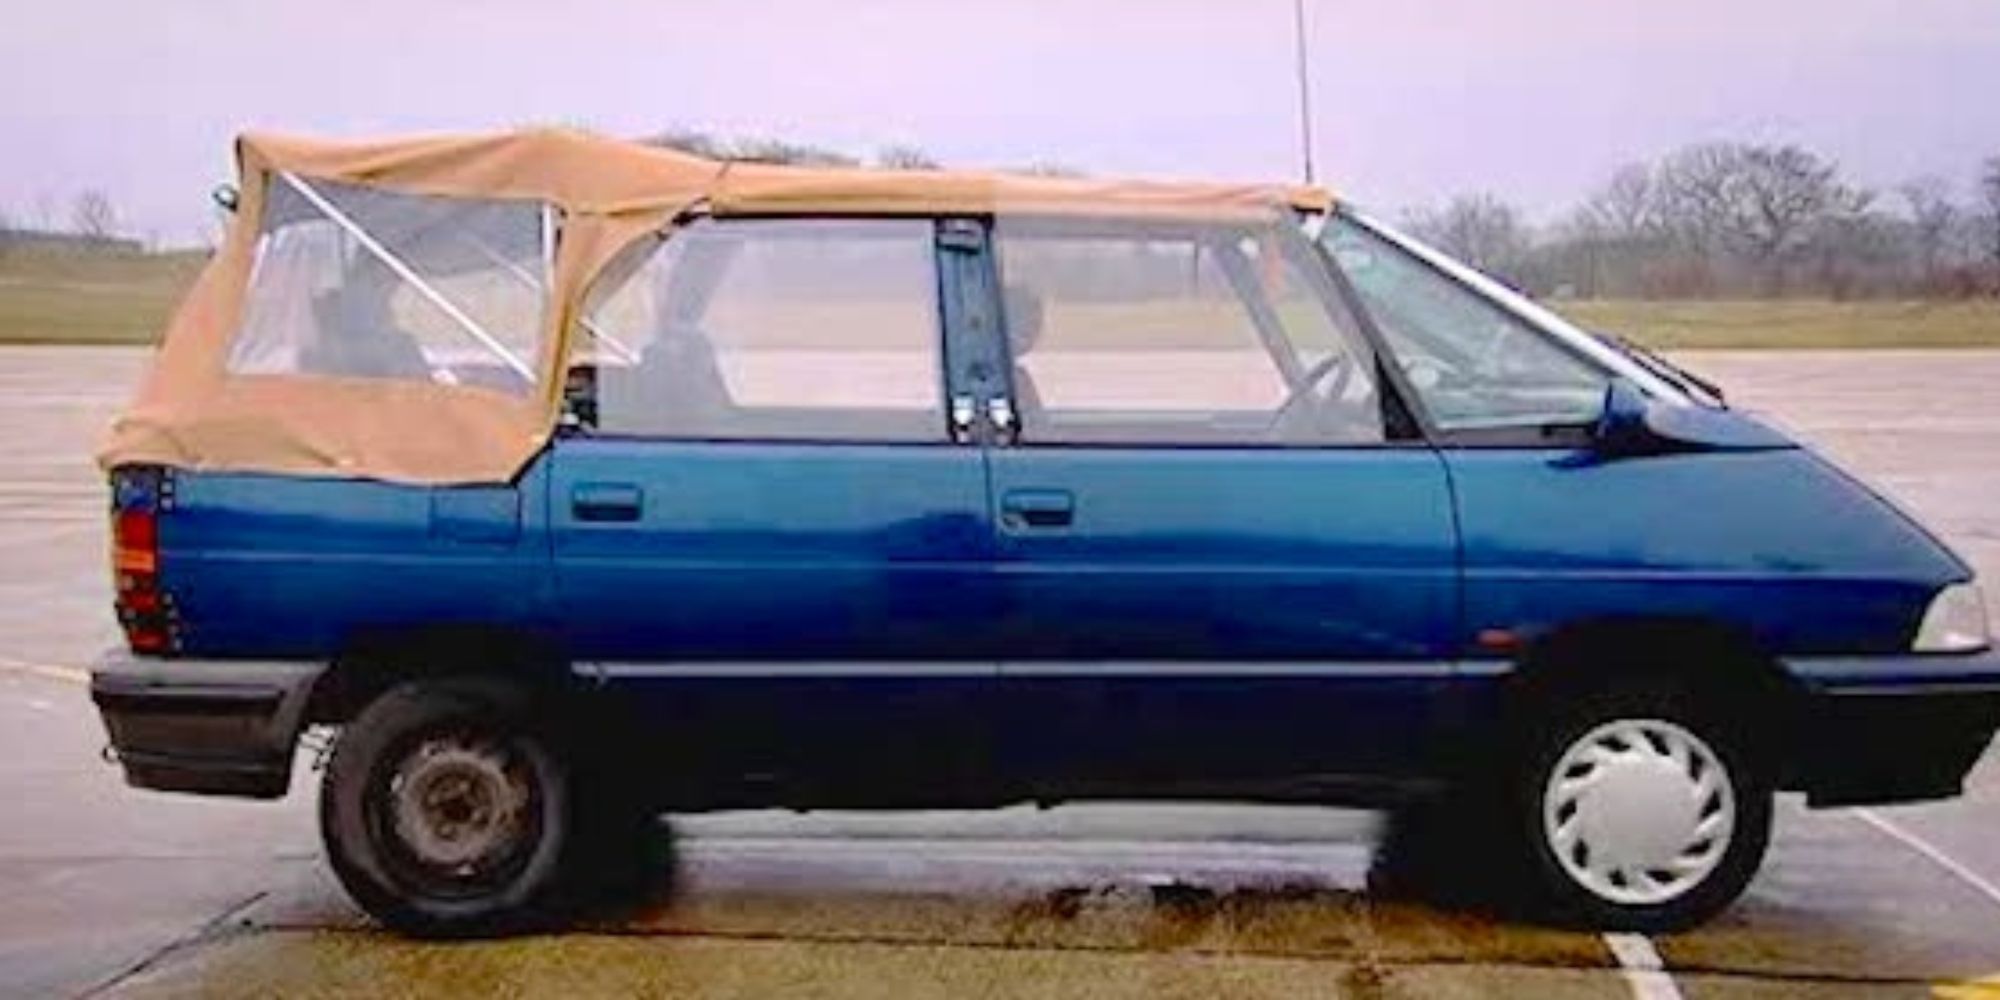 Uma imagem do Espace Convertible no episódio 1 da 8ª temporada de Top Gear em um estacionamento chuvoso